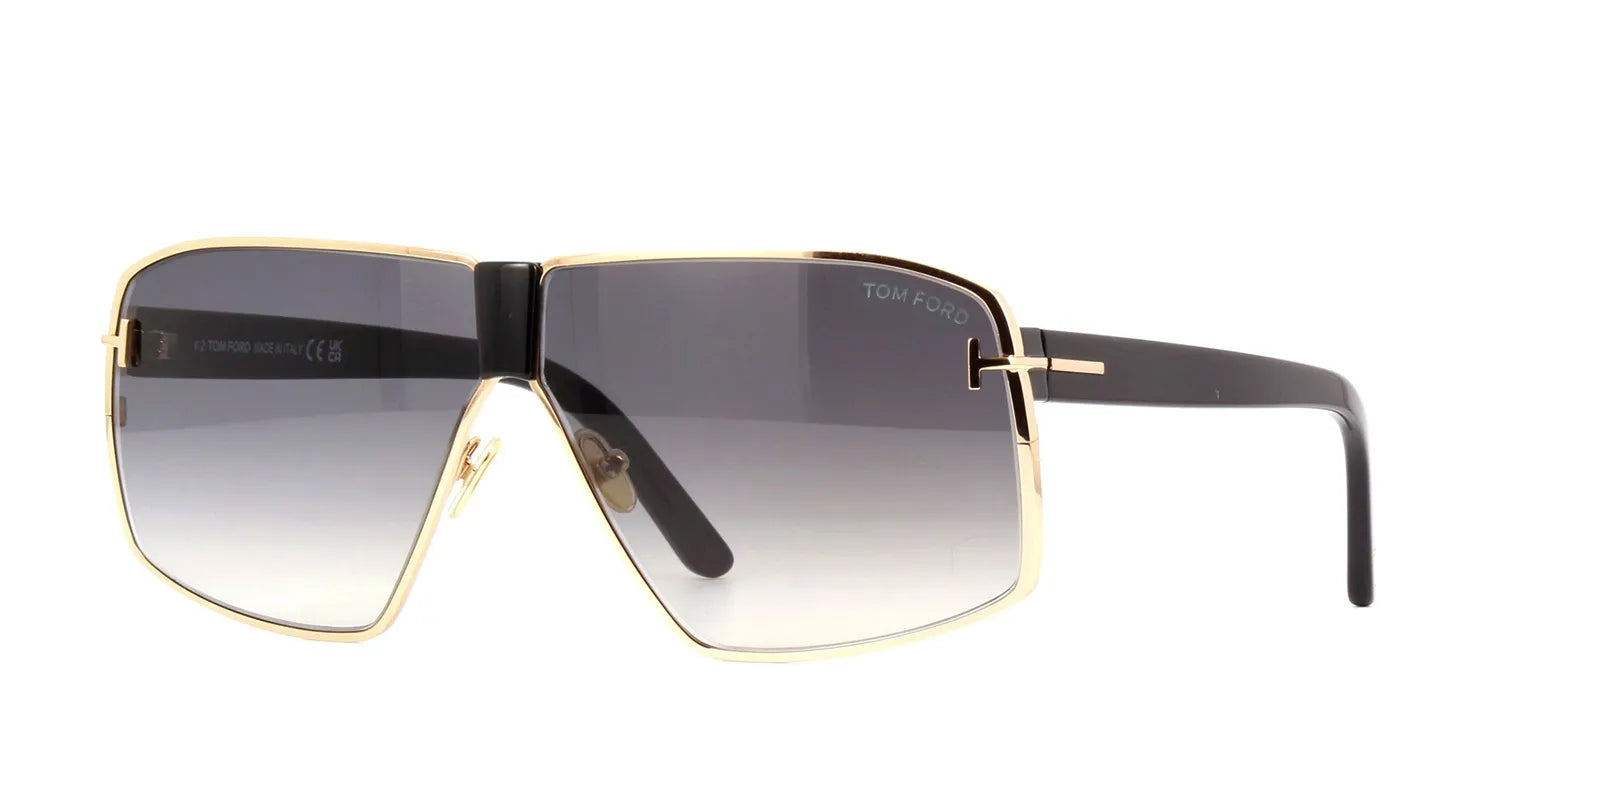 نظارة شمسية توم فورد - نظارة شمسية رجالية - نظارة شمسية نسائية - نظارة شمسية رجالية ونسائية = نظارة شمسية